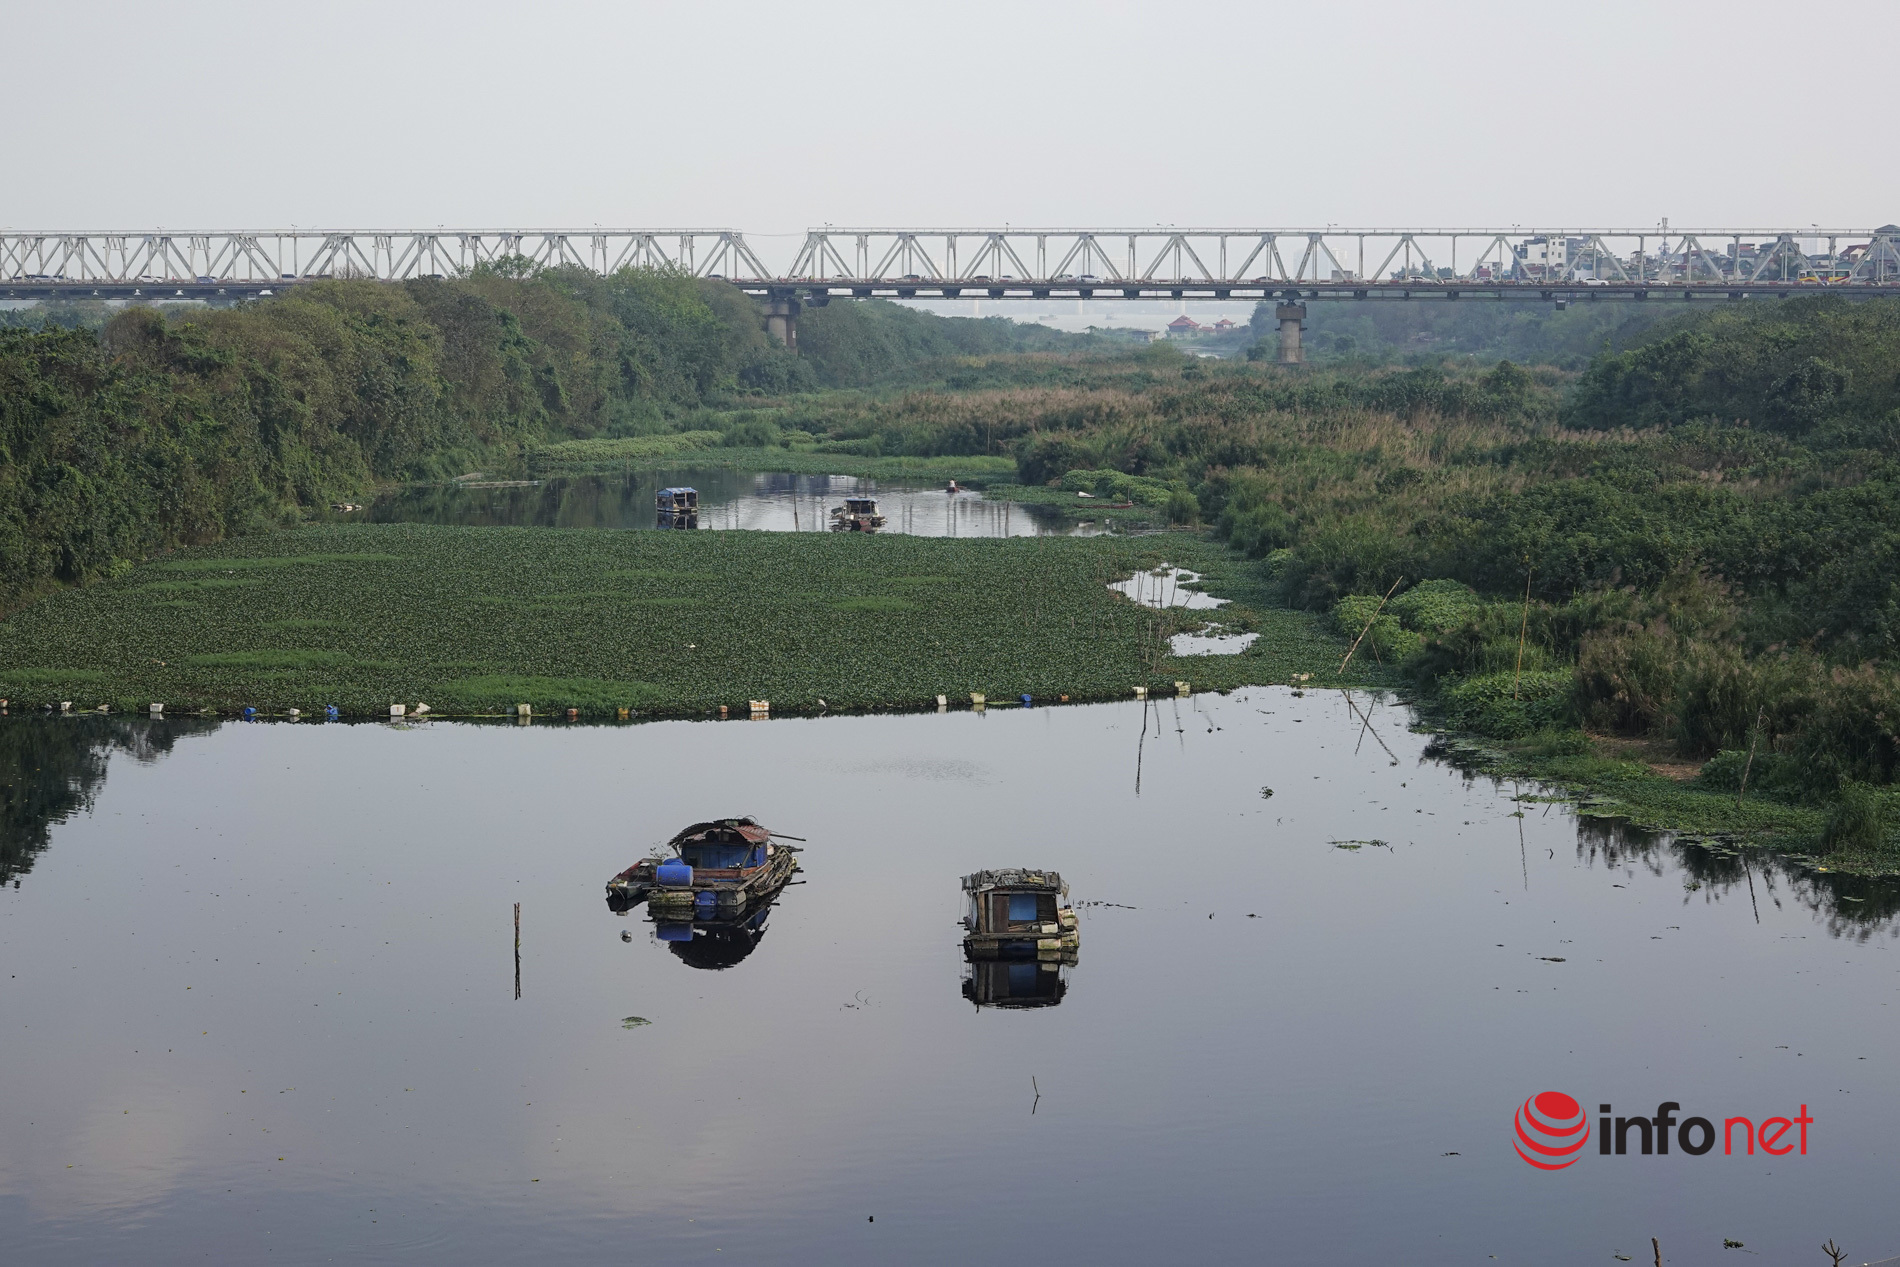 Hà Nội: Toàn cảnh bãi giữa sông Hồng nên thơ được đề xuất cải tạo thành công viên văn hóa - Ảnh 13.